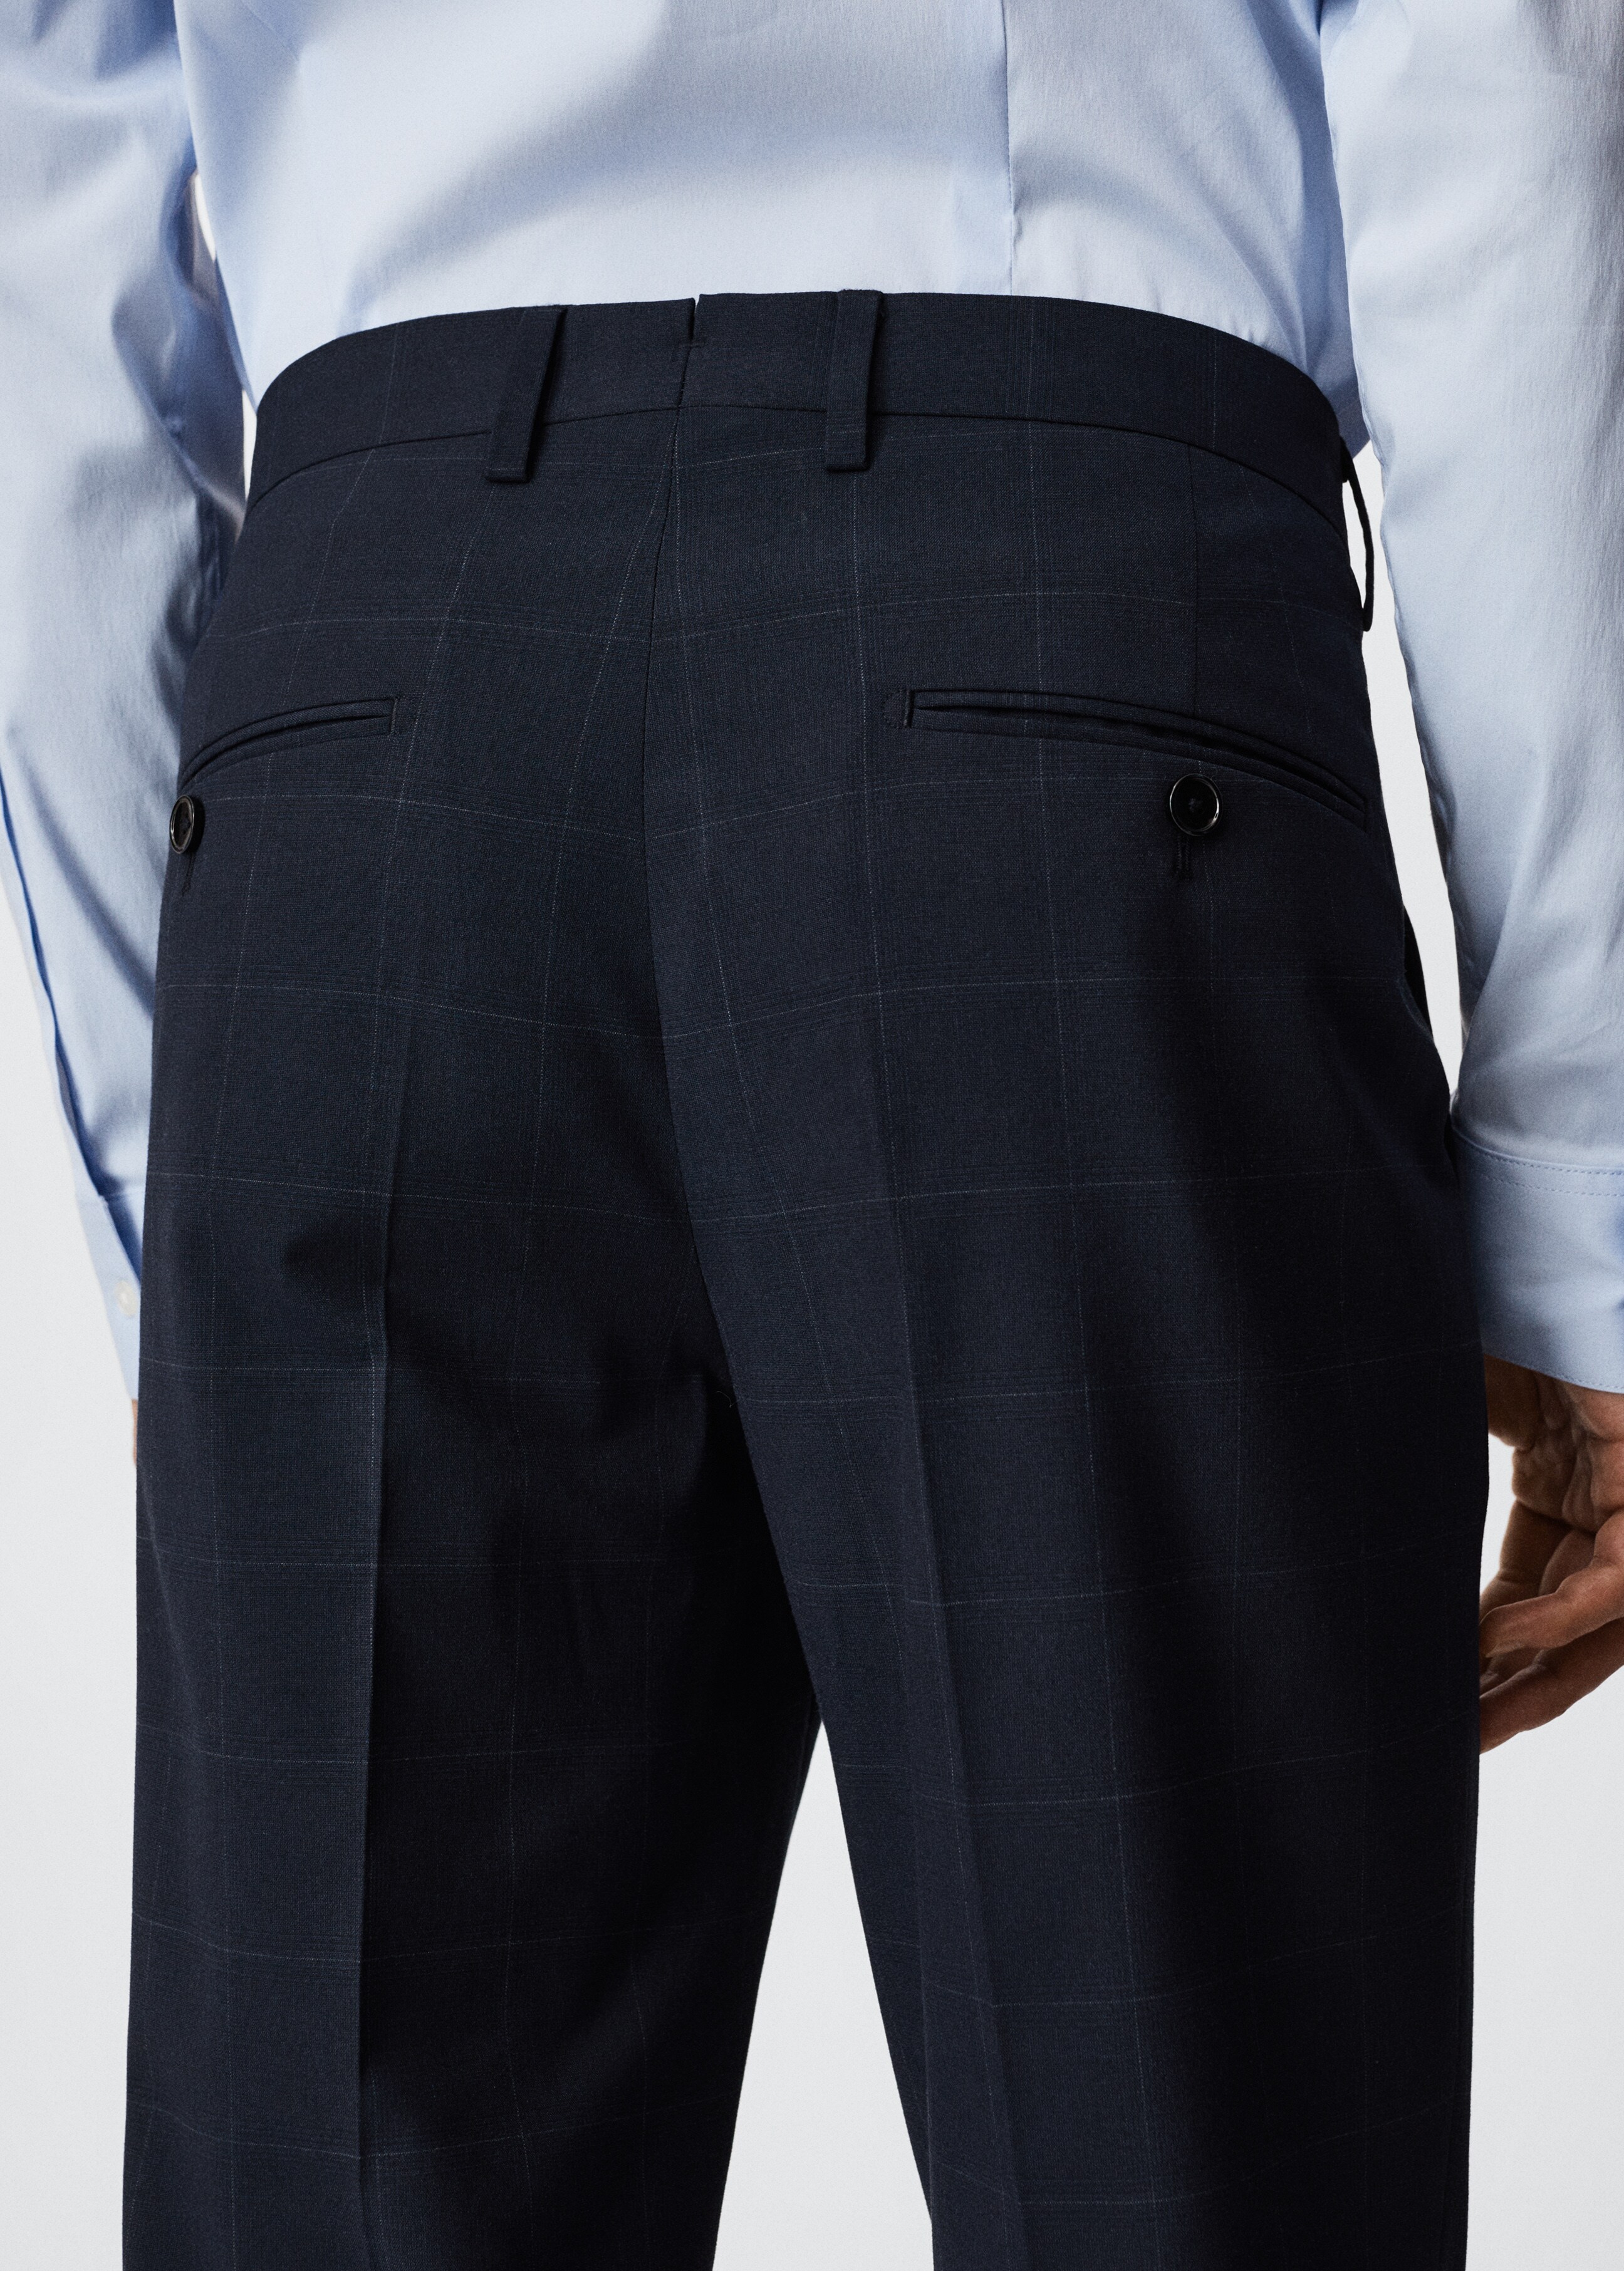 Pantalons vestir slim fit quadres - Detall de l'article 3